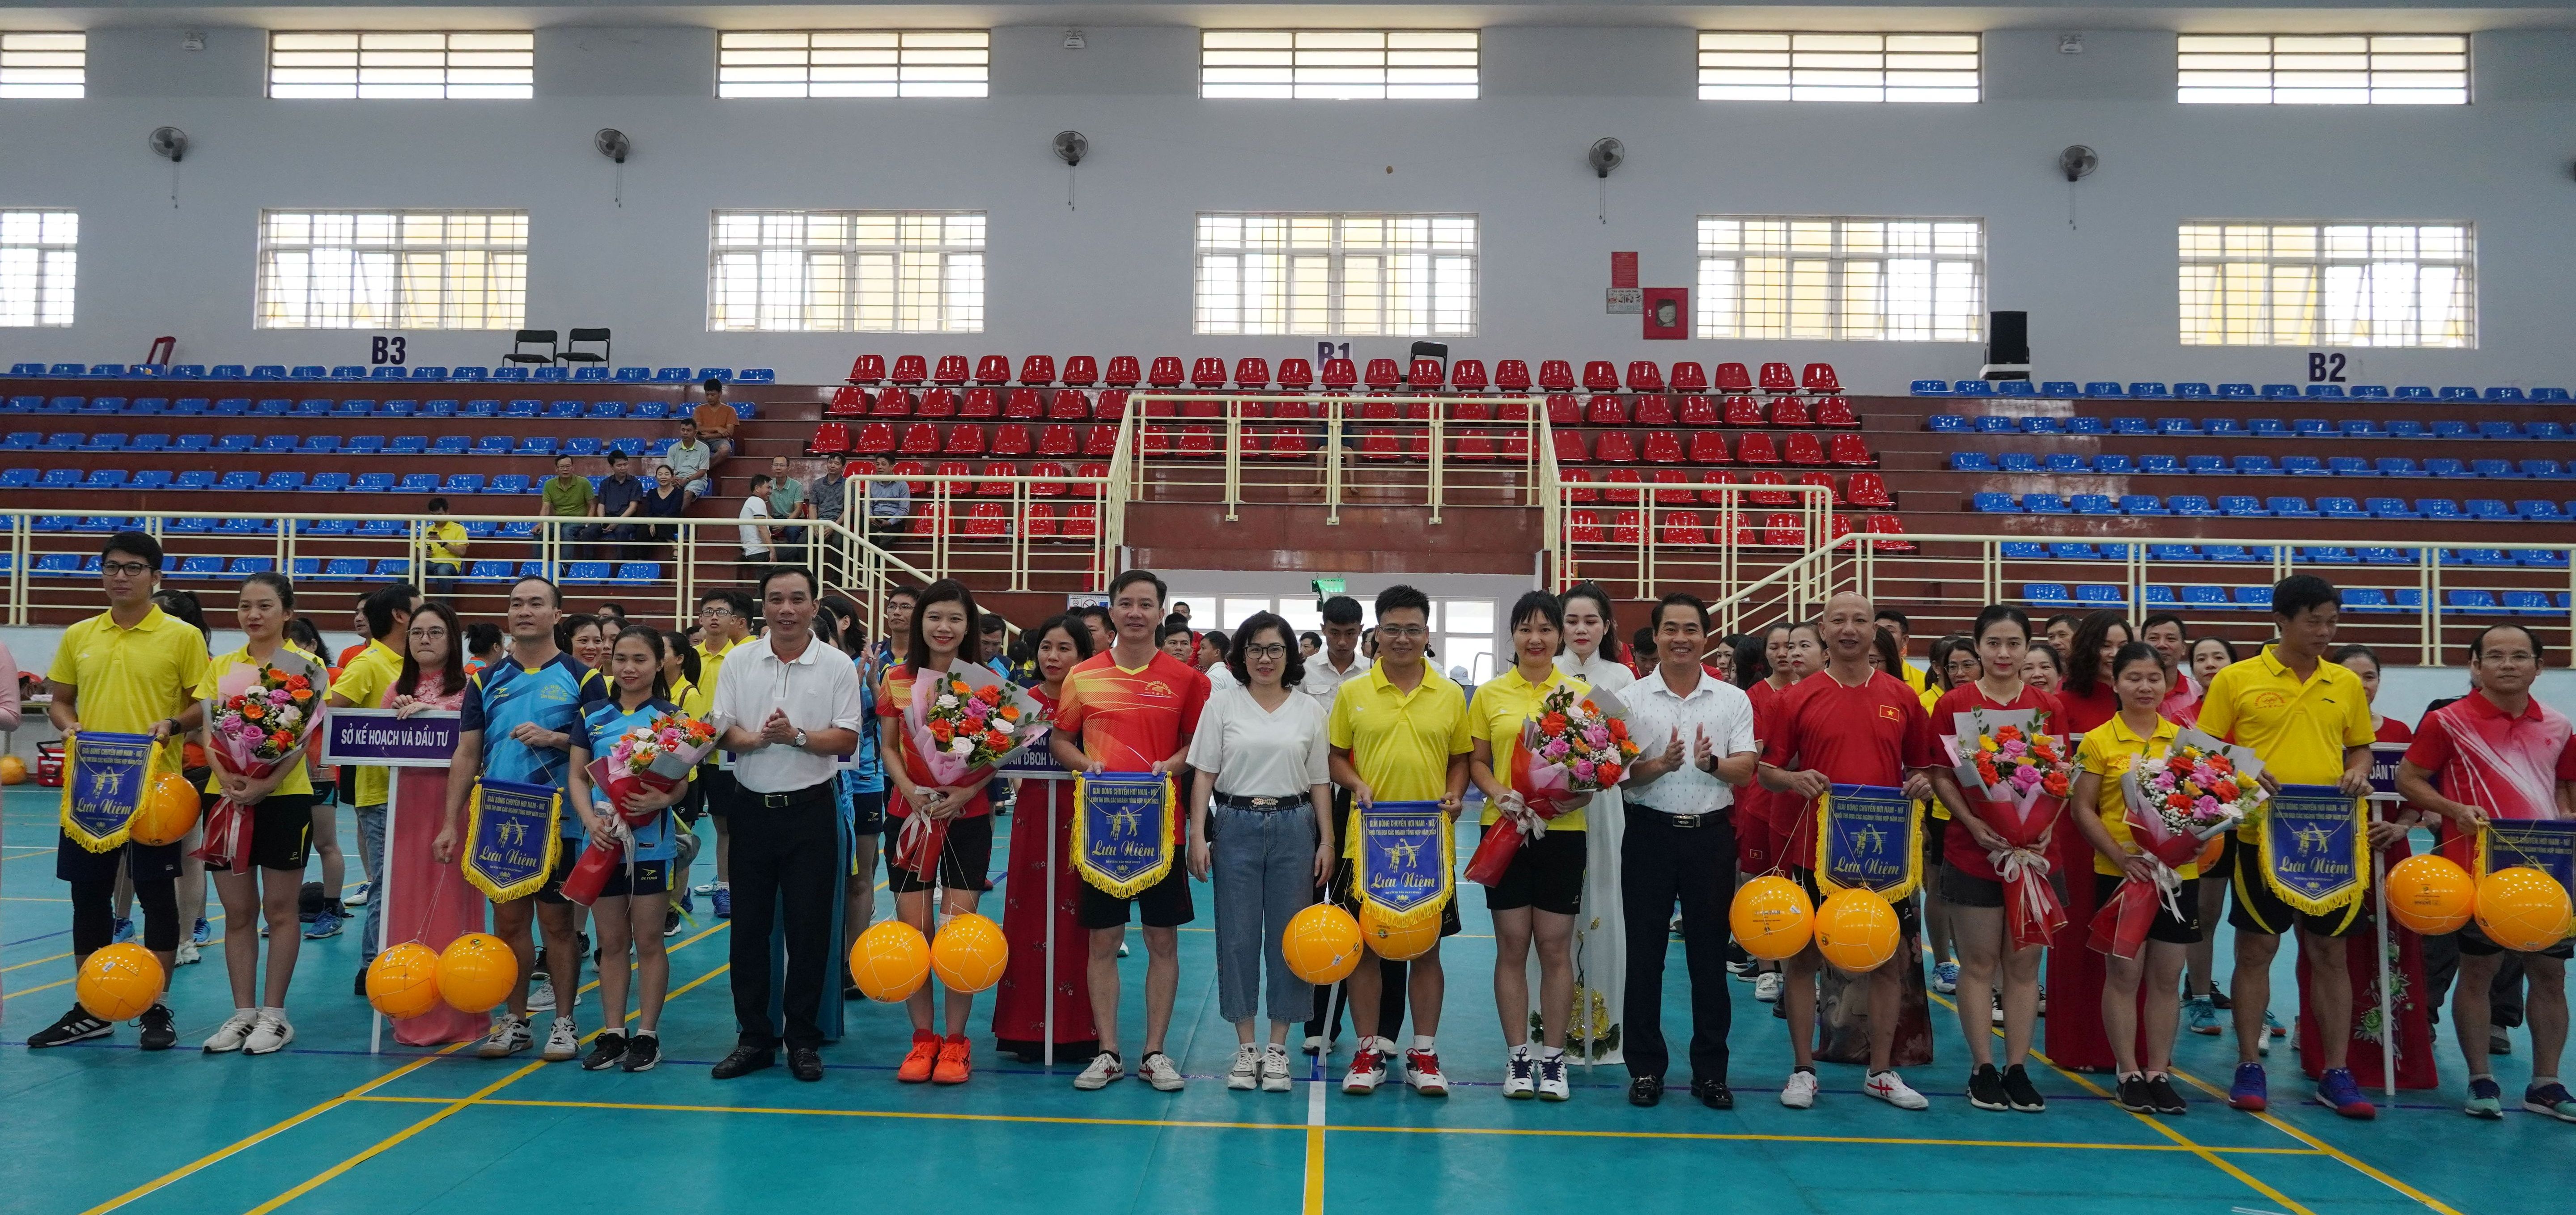 Ban tổ chức tặng hoa và cờ lưu niệm cho các đội bóng tham gia giải.